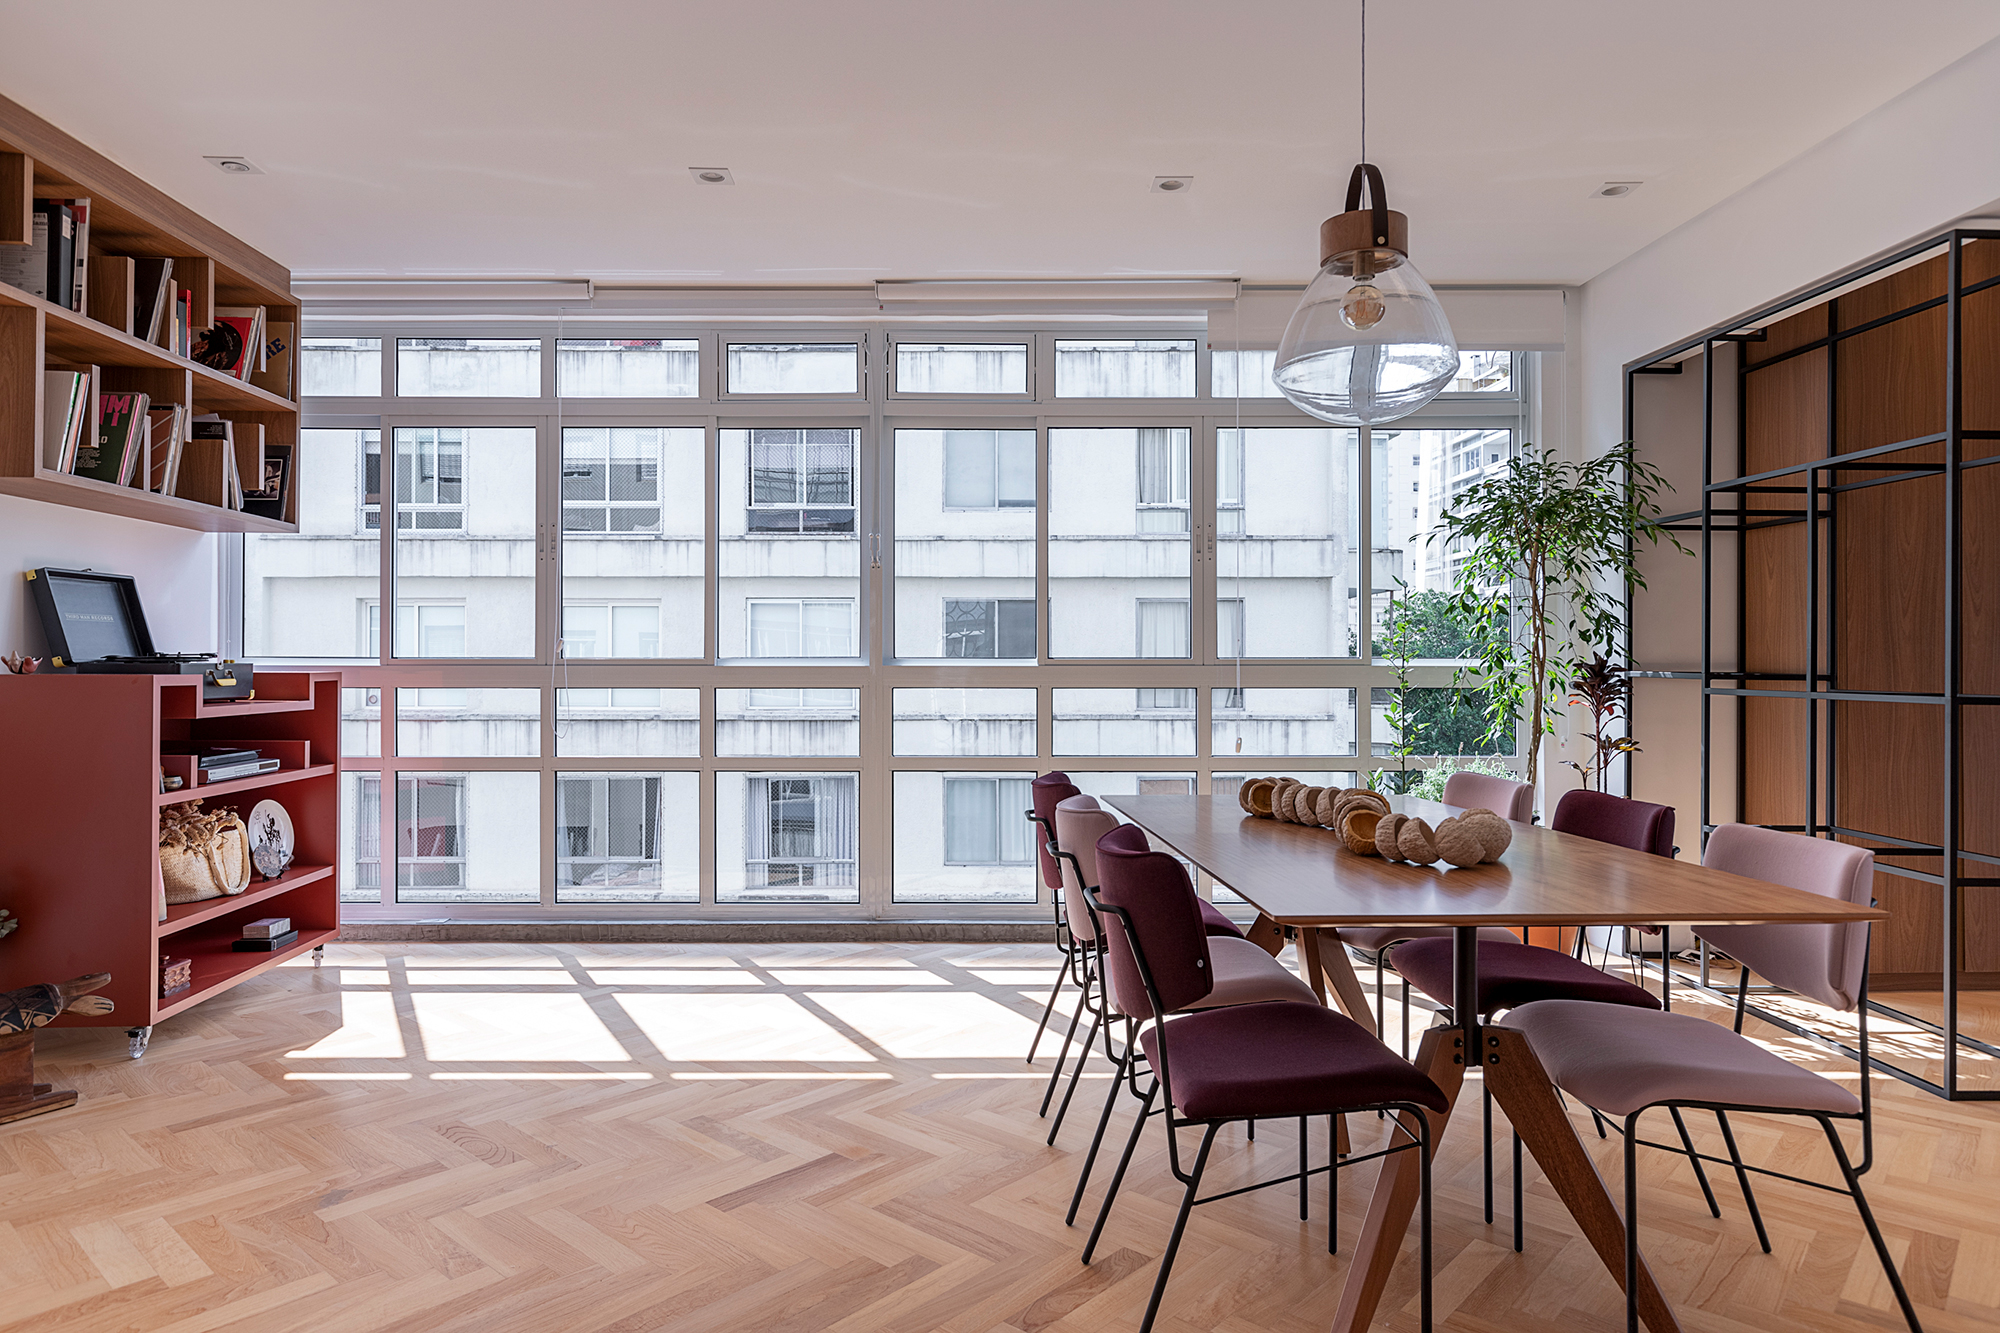 Apartamento dos anos 1950 une charme, história e cores em 128 m². Projeto de Ju Matos Arquitetura. Na foto, sala de estar e jantar com janelão e piso de escama de peixe.